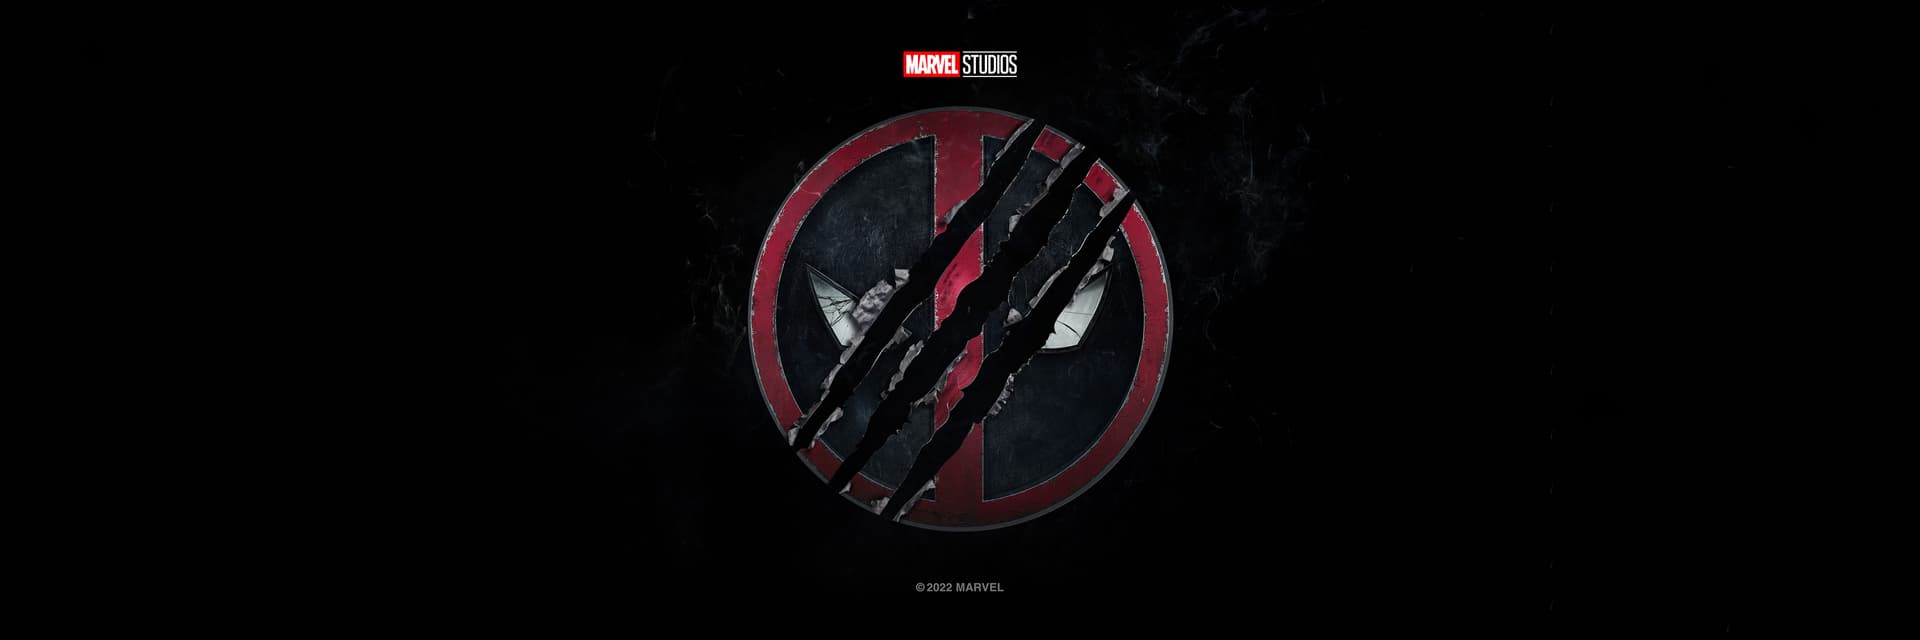 Untitled Deadpool Movie Deadpool 3 Logo on Black